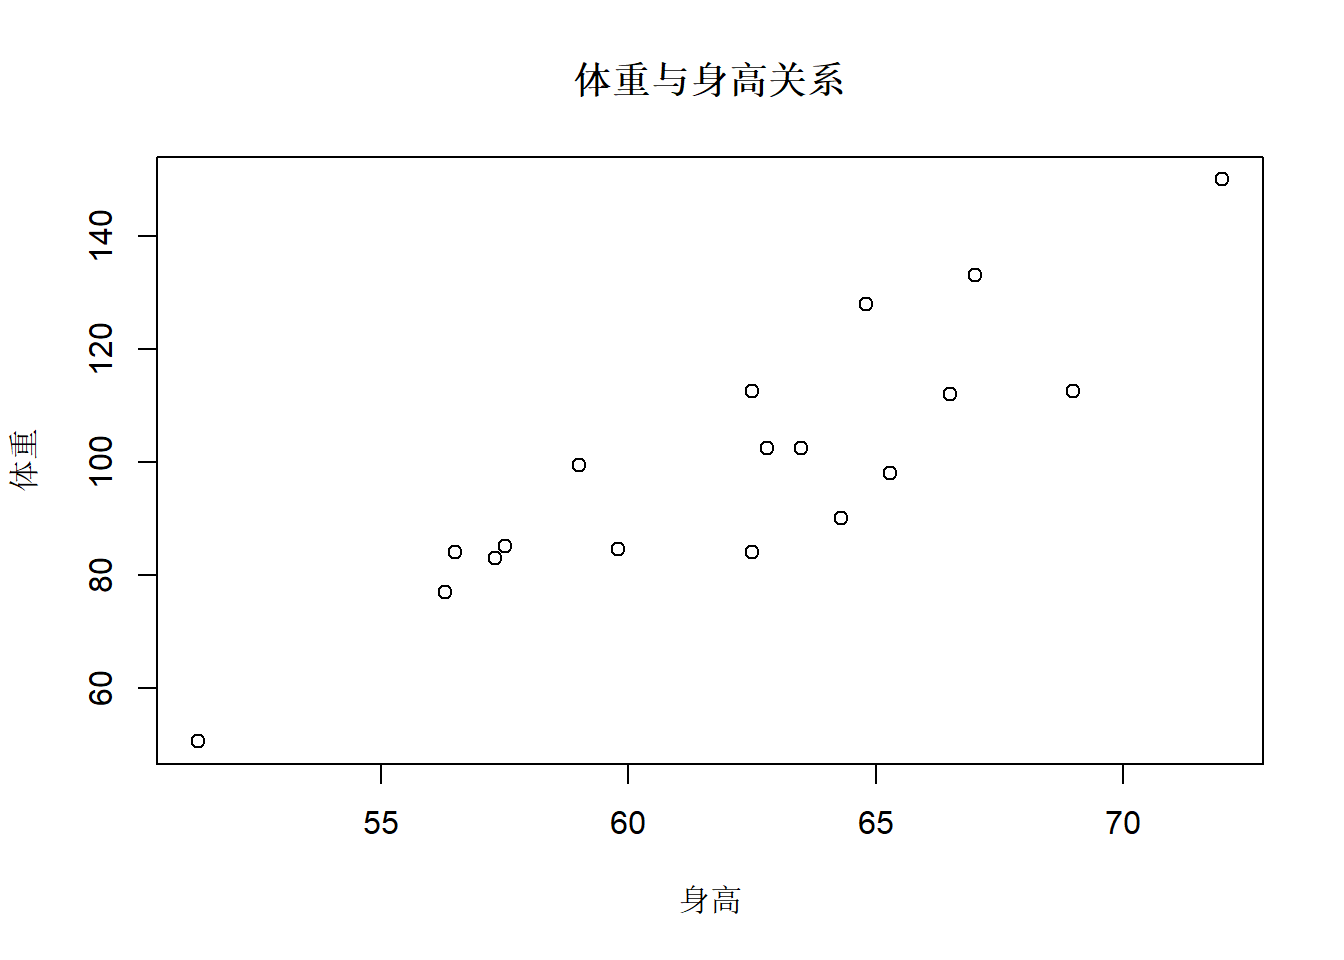 北京大学R语言教程(李东风)第26章： 基本R绘图